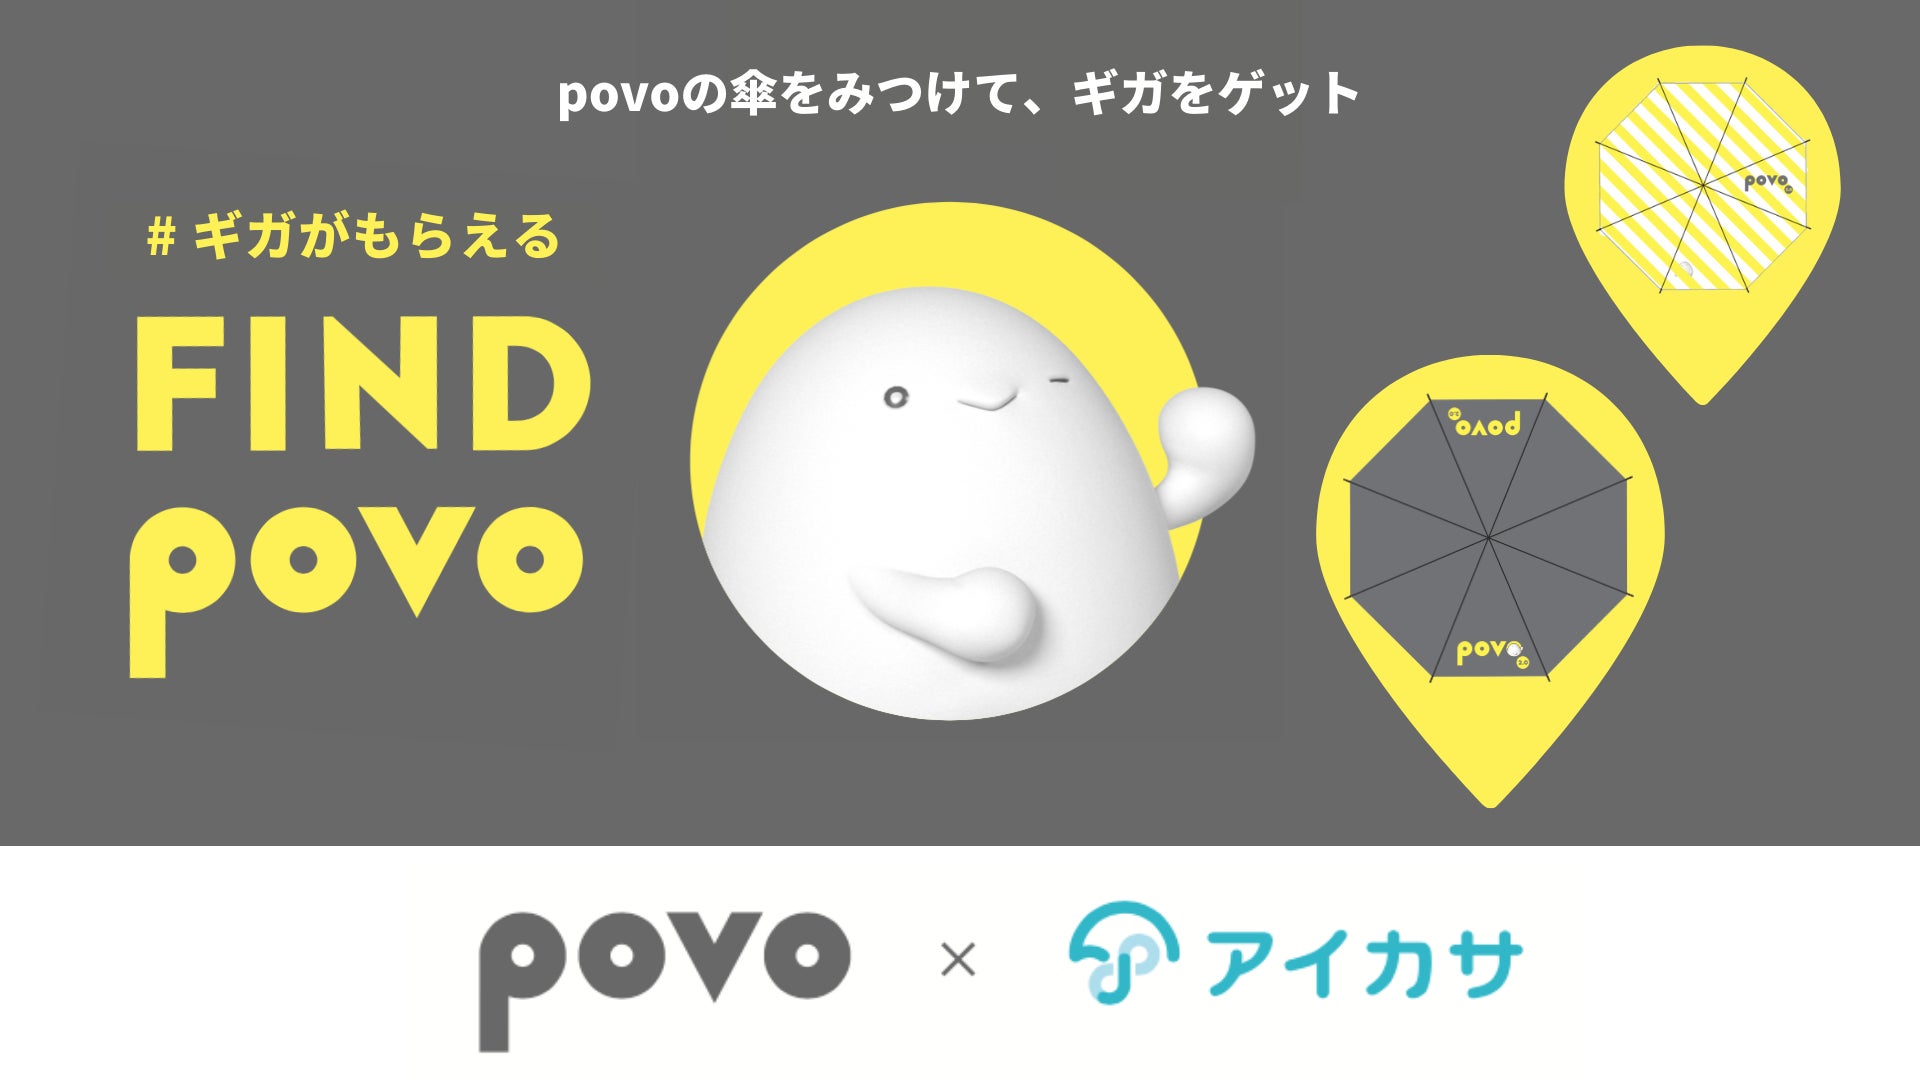 傘シェアでギガ活！povo2.0の「FIND povo」として“かくれpovo傘”を見つけてギガが当たるキャンペーンを開始のサブ画像1